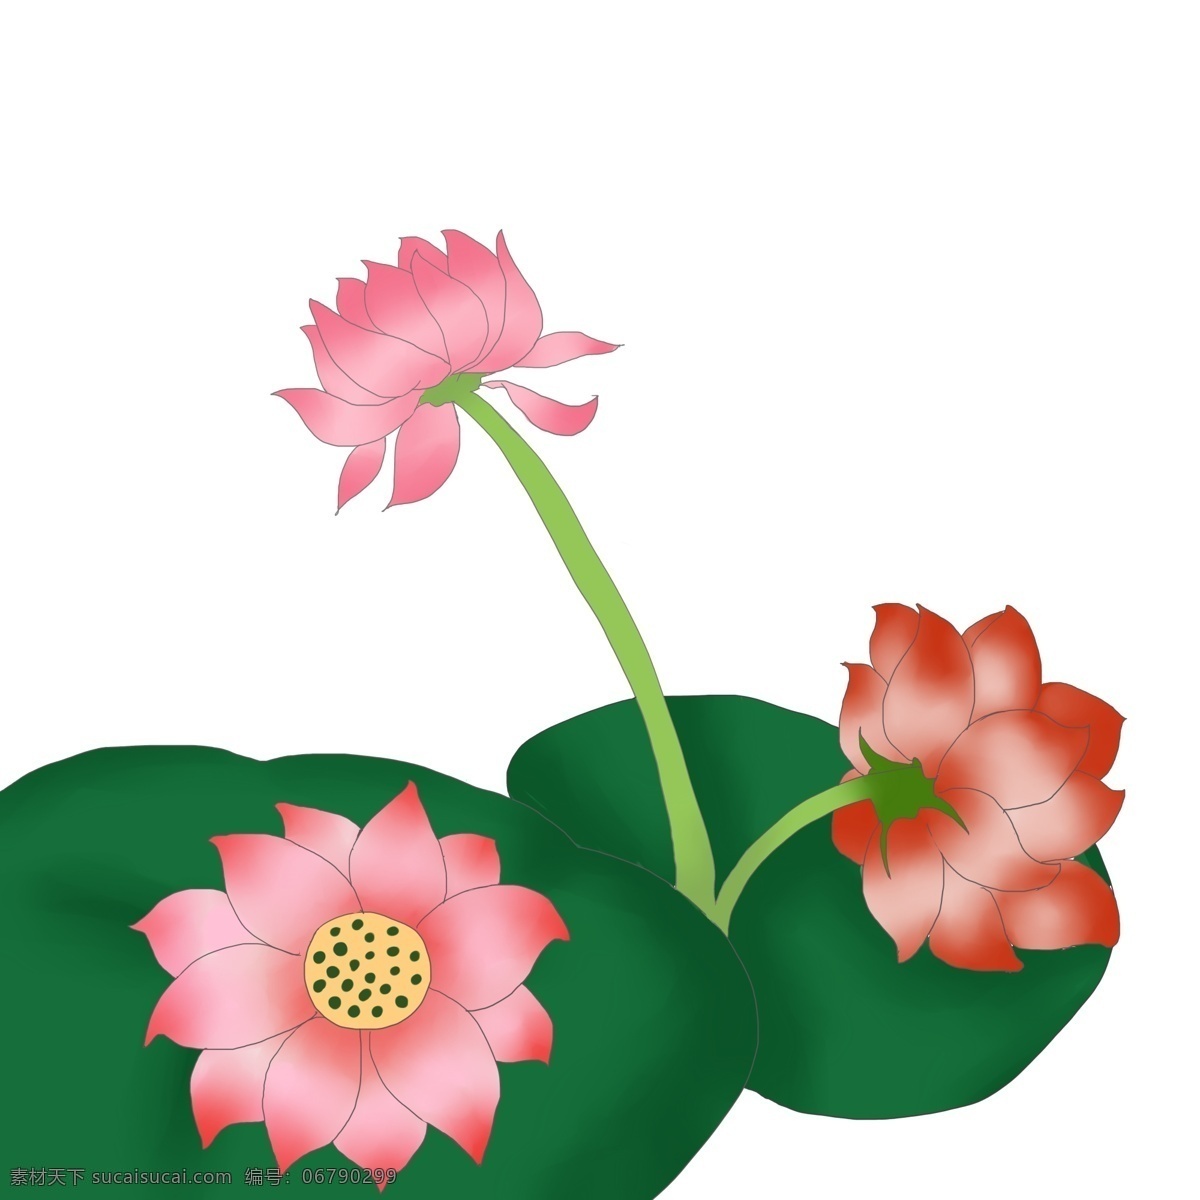 三 朵 荷花 花开 插画 自然植物荷花 美丽绽放花开 绿色花蕾花瓣 荷花苞 绿色荷叶 三朵荷花插画